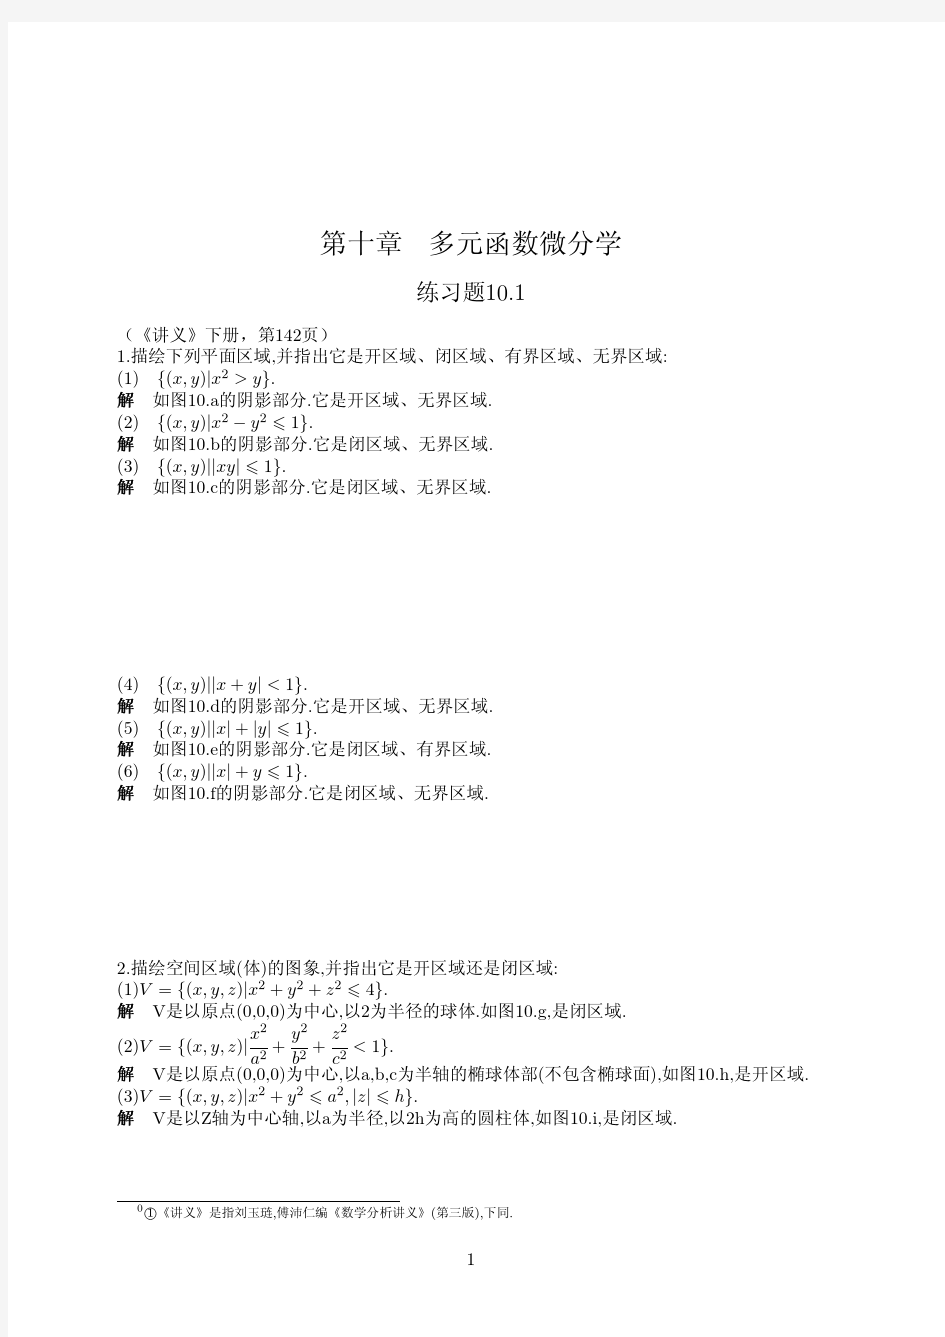 数学分析讲义 第四版 (刘玉琏 傅沛仁 著) 高等教育出版社 课后答案 第十单元